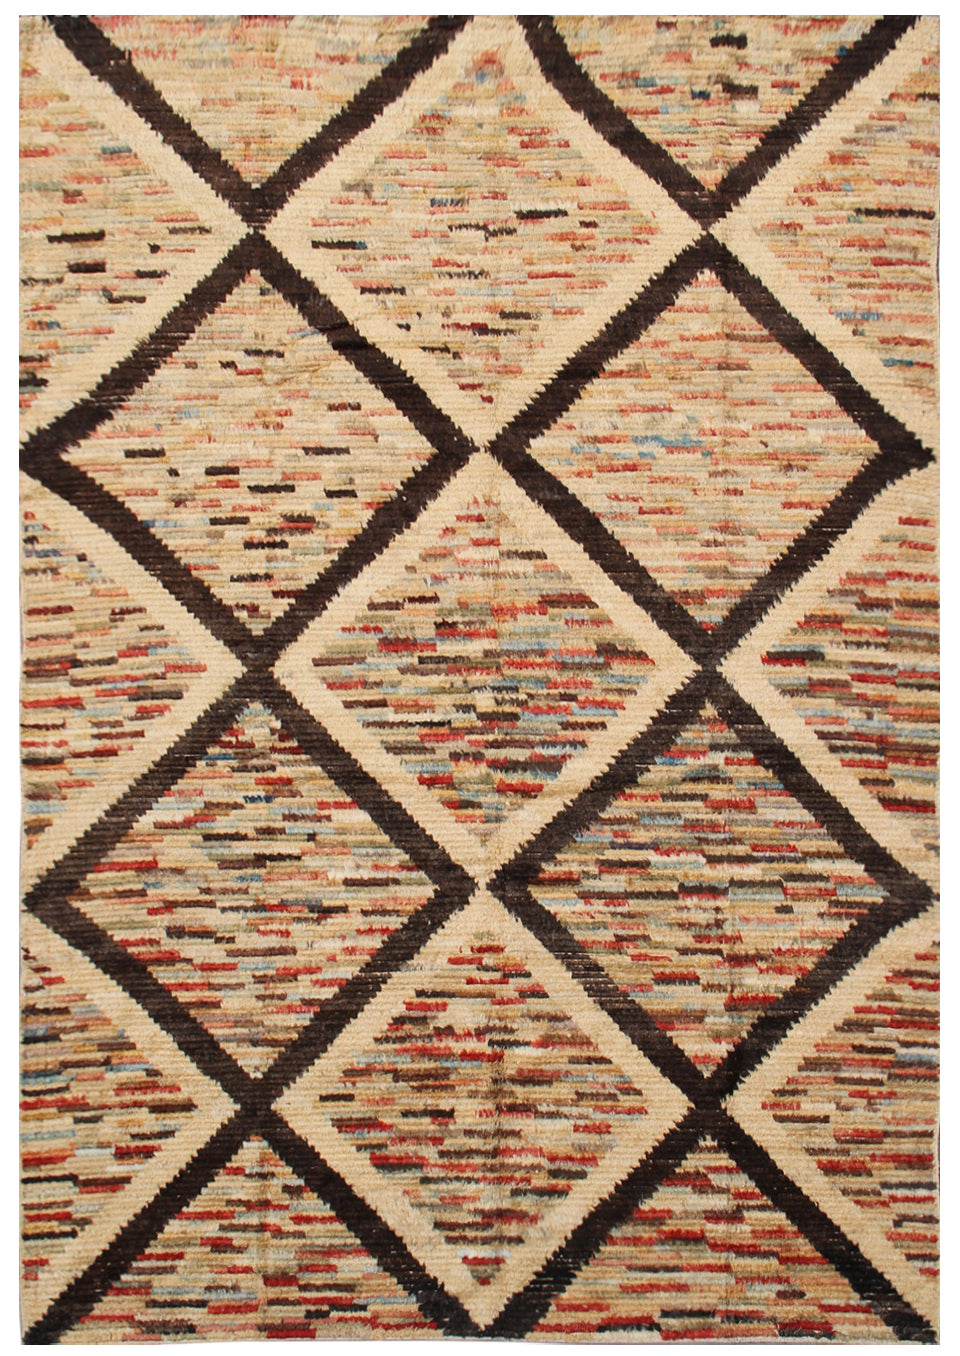 6'x9' Ariana Moroccan Geometric Diamond Pattern Barchi Wool Area Rug